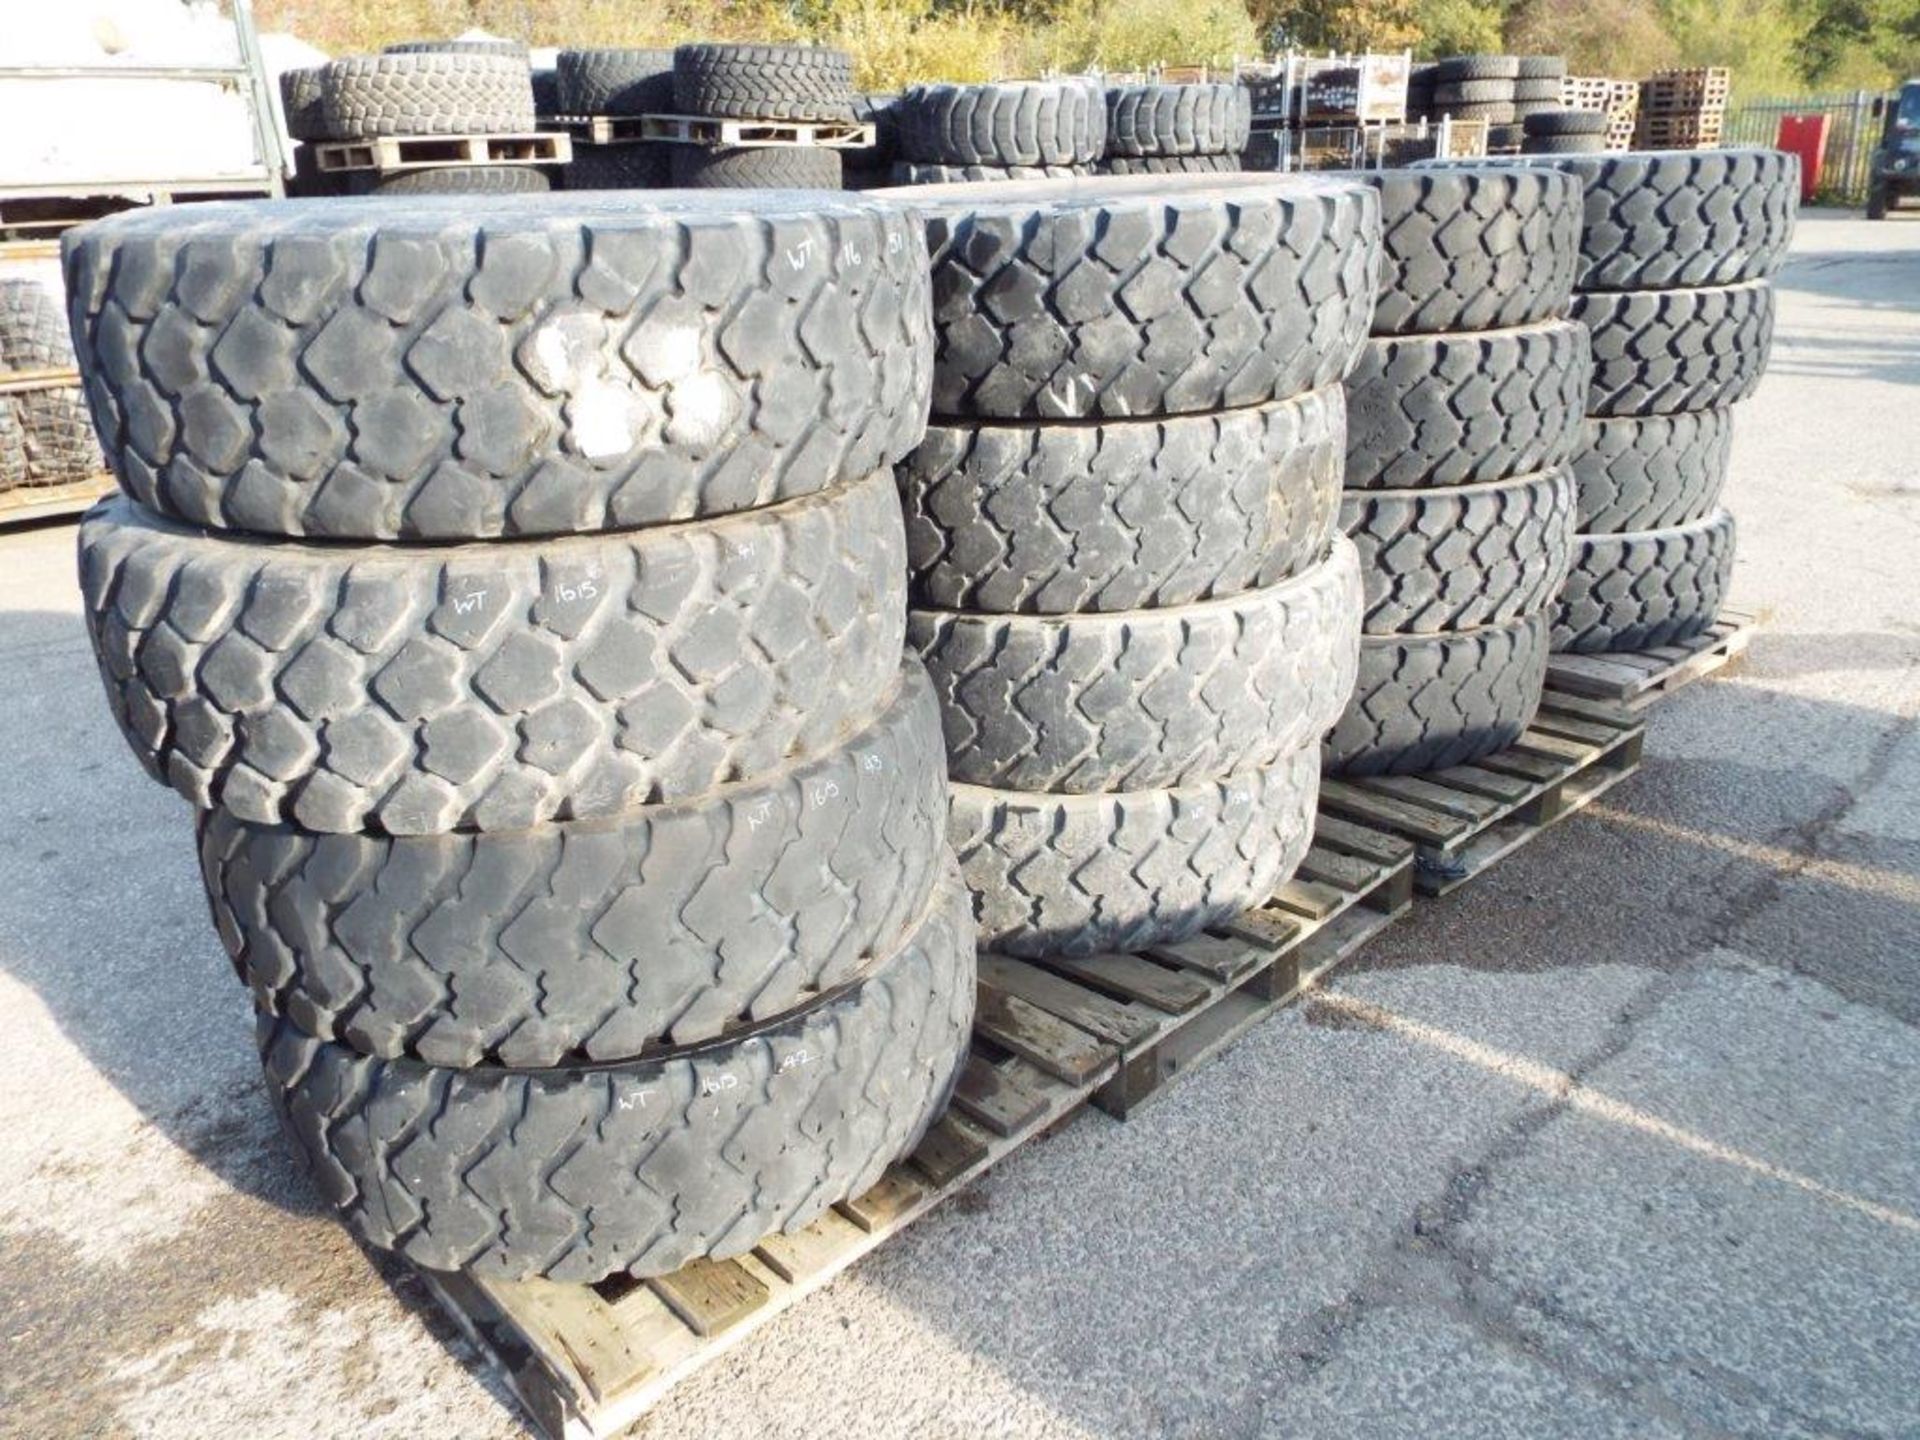 16 x Michelin XZL 365/85 R20 Tyres